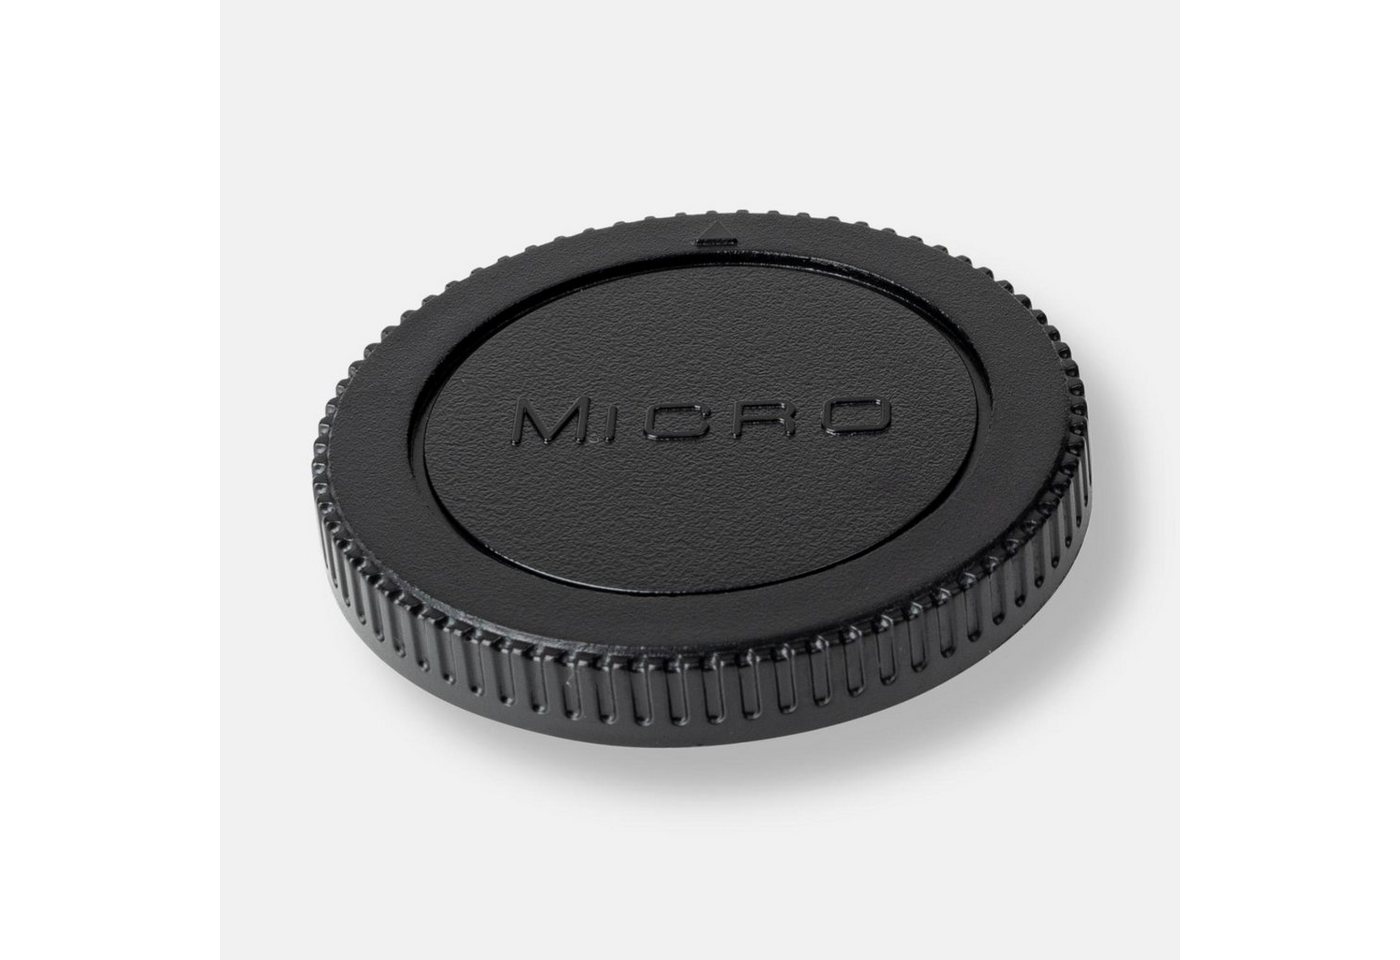 Lens-Aid Gehäusedeckel für Micro 4/3-Bajonett (M4/3), Body Cap, DSLR, Systemkamera von Lens-Aid